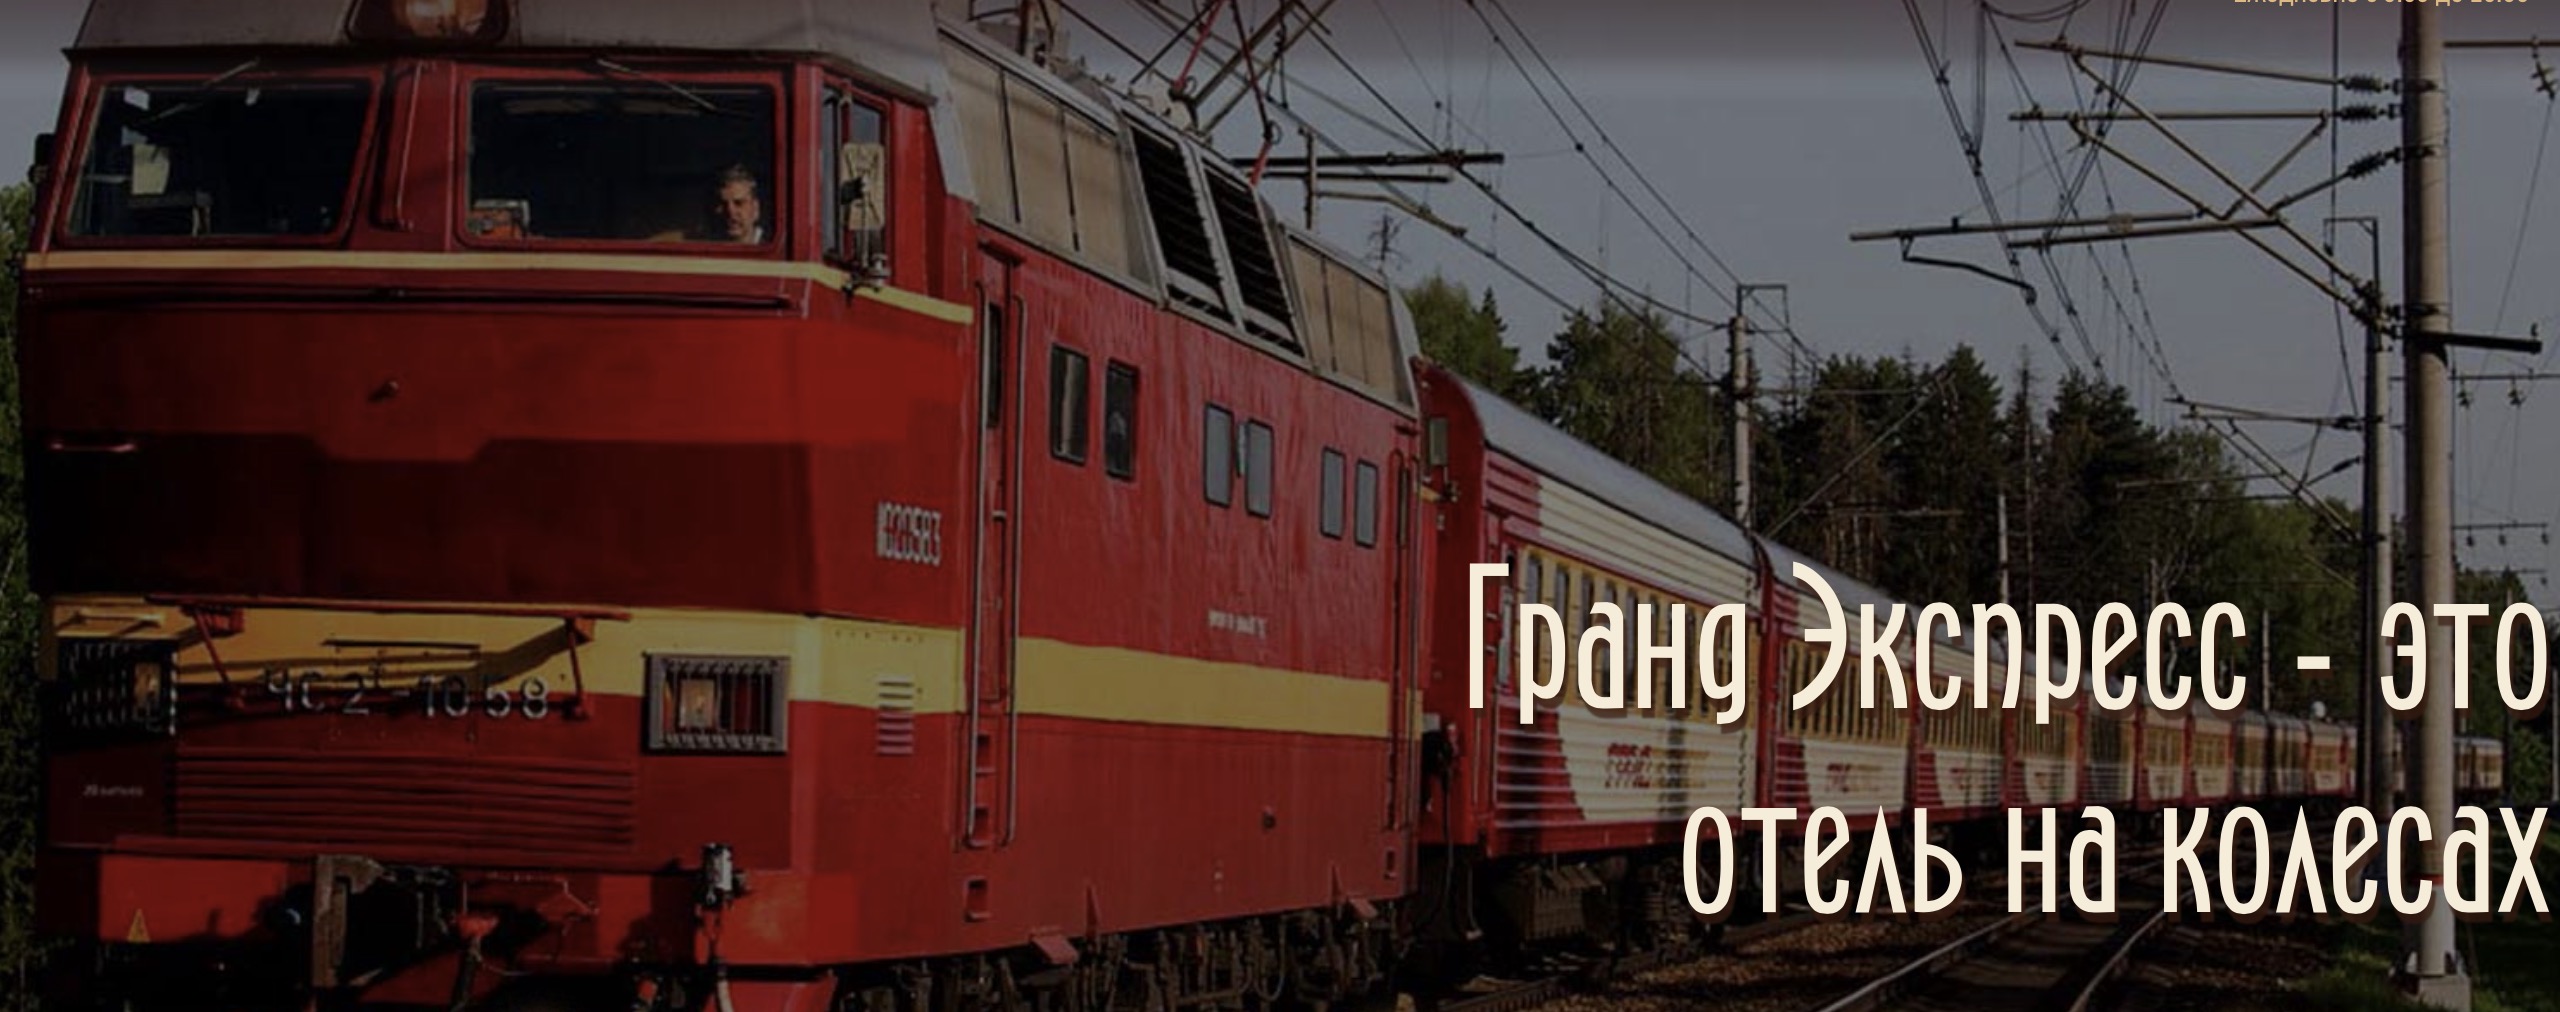 Путешествовать по России лучше на частном поезде